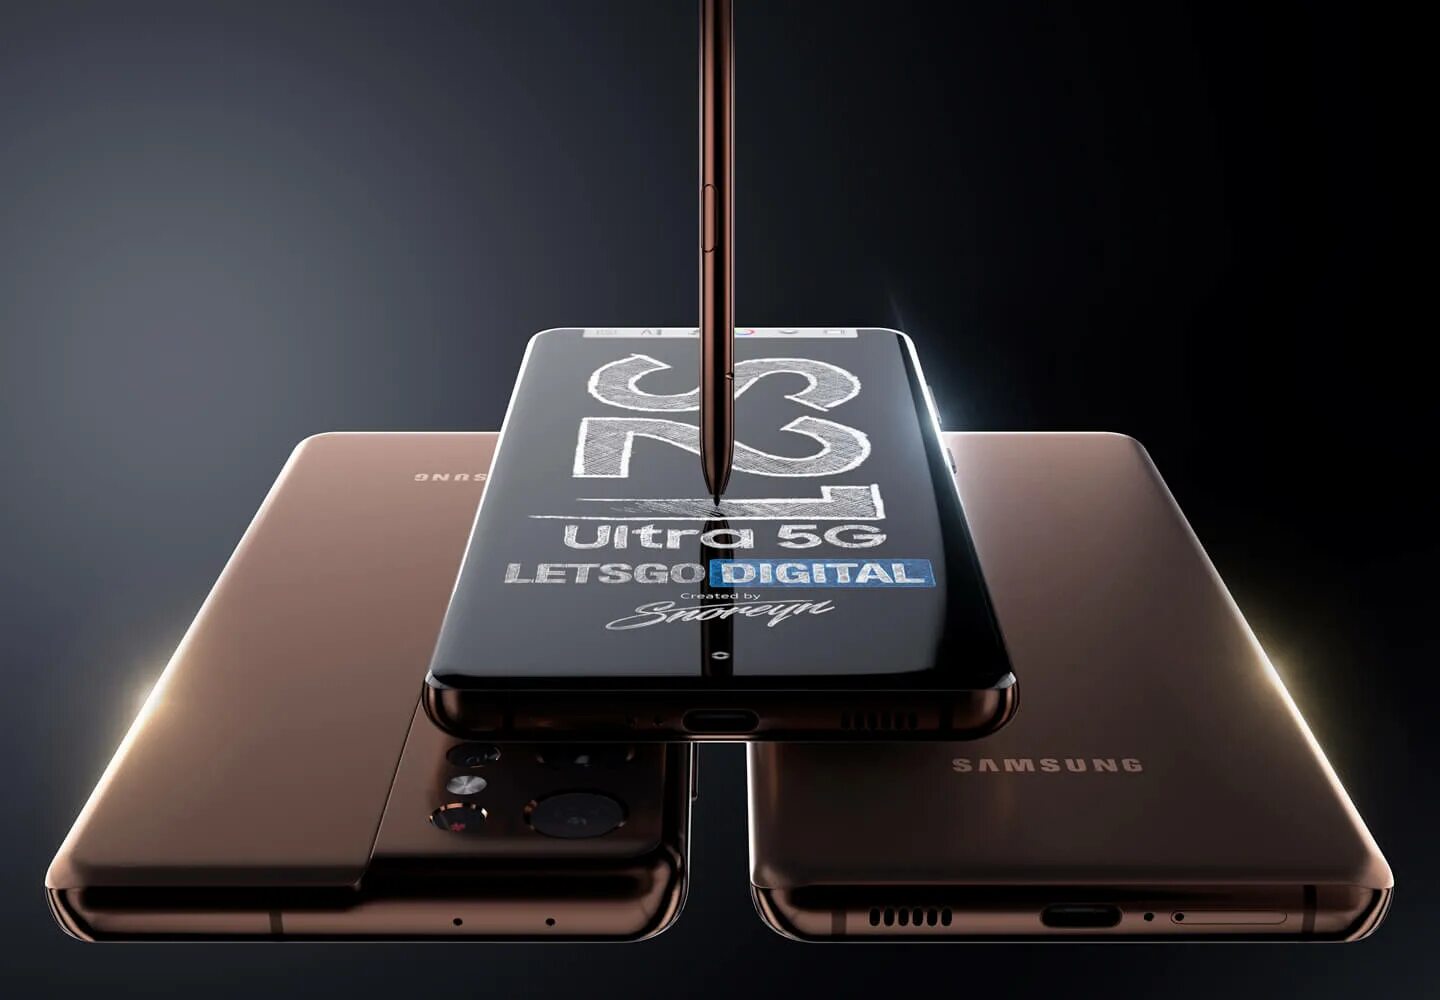 Samsung Galaxy s21 ультра 5g. Galaxy s21 Ultra 5g. Samsung Galaxy s 21 ультра. Samsung Galaxy s21 Ultra 5g Exynos. Samsung s8 ultra 5g